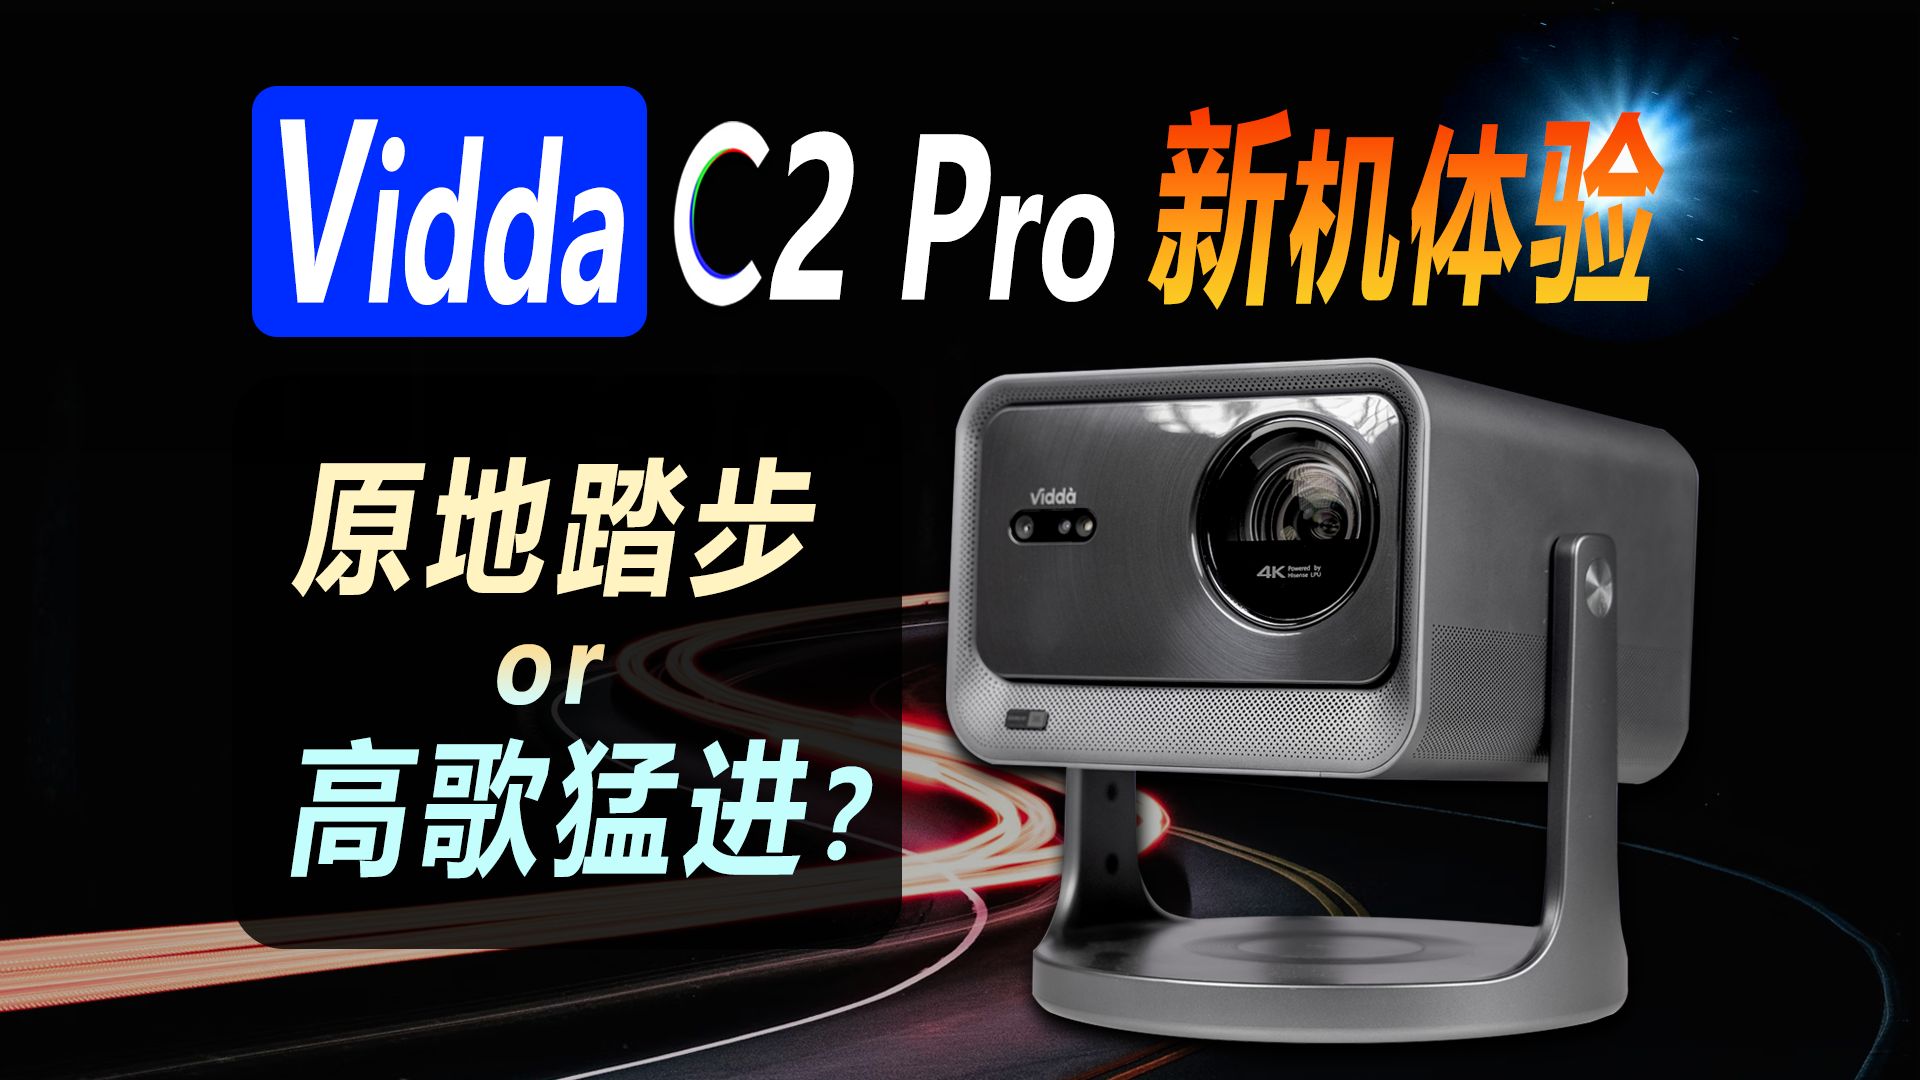 Vidda C2 Pro三色激光投影仪新品旗舰机体验，升级点及画质表现全面解析，新机是原地踏步还是高歌猛进？